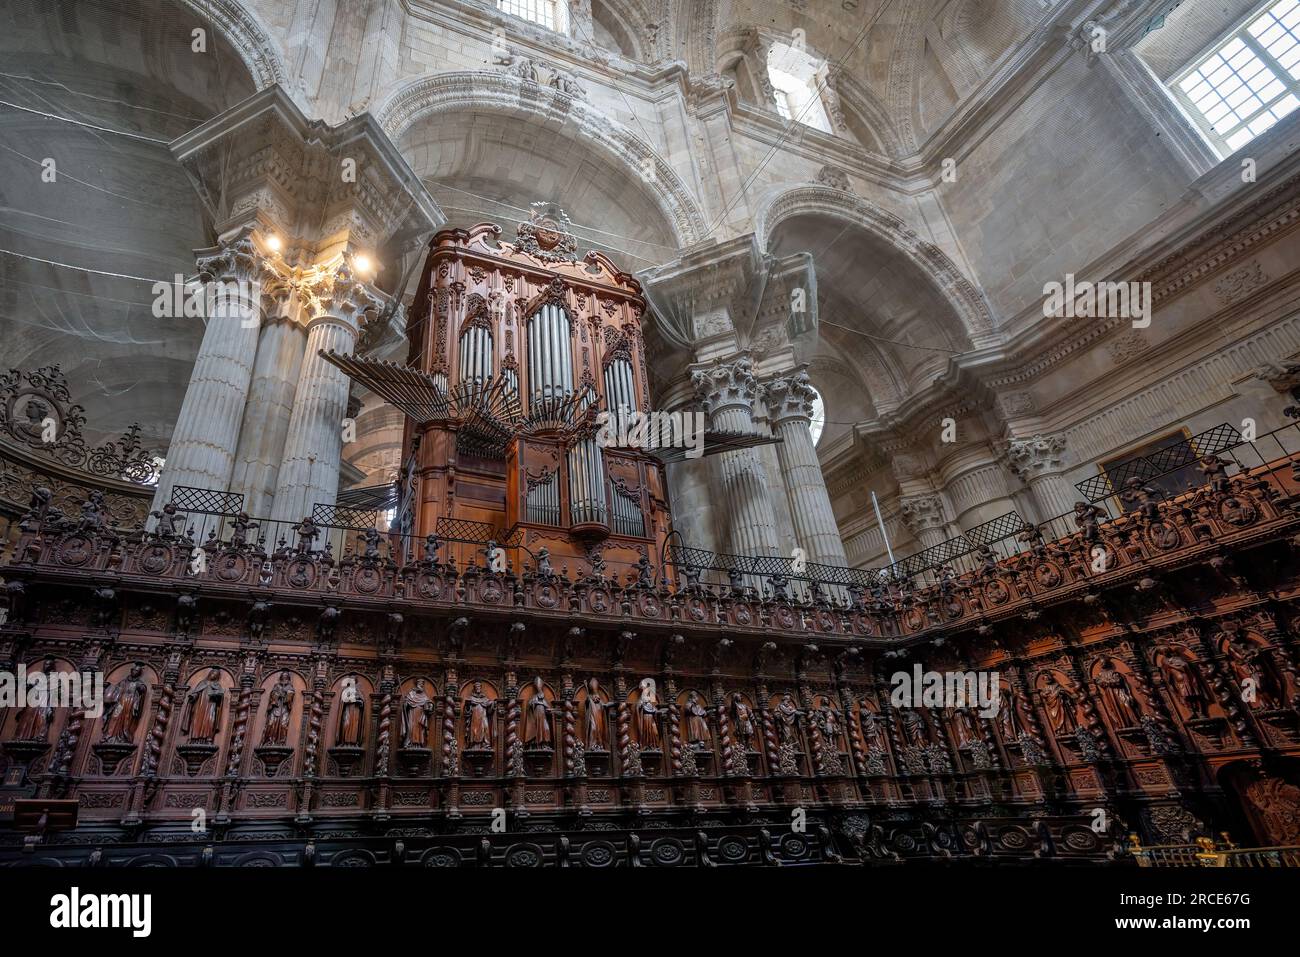 Chor und Orgel in der Kathedrale von Cadiz - Cadiz, Andalusien, Spanien Stockfoto